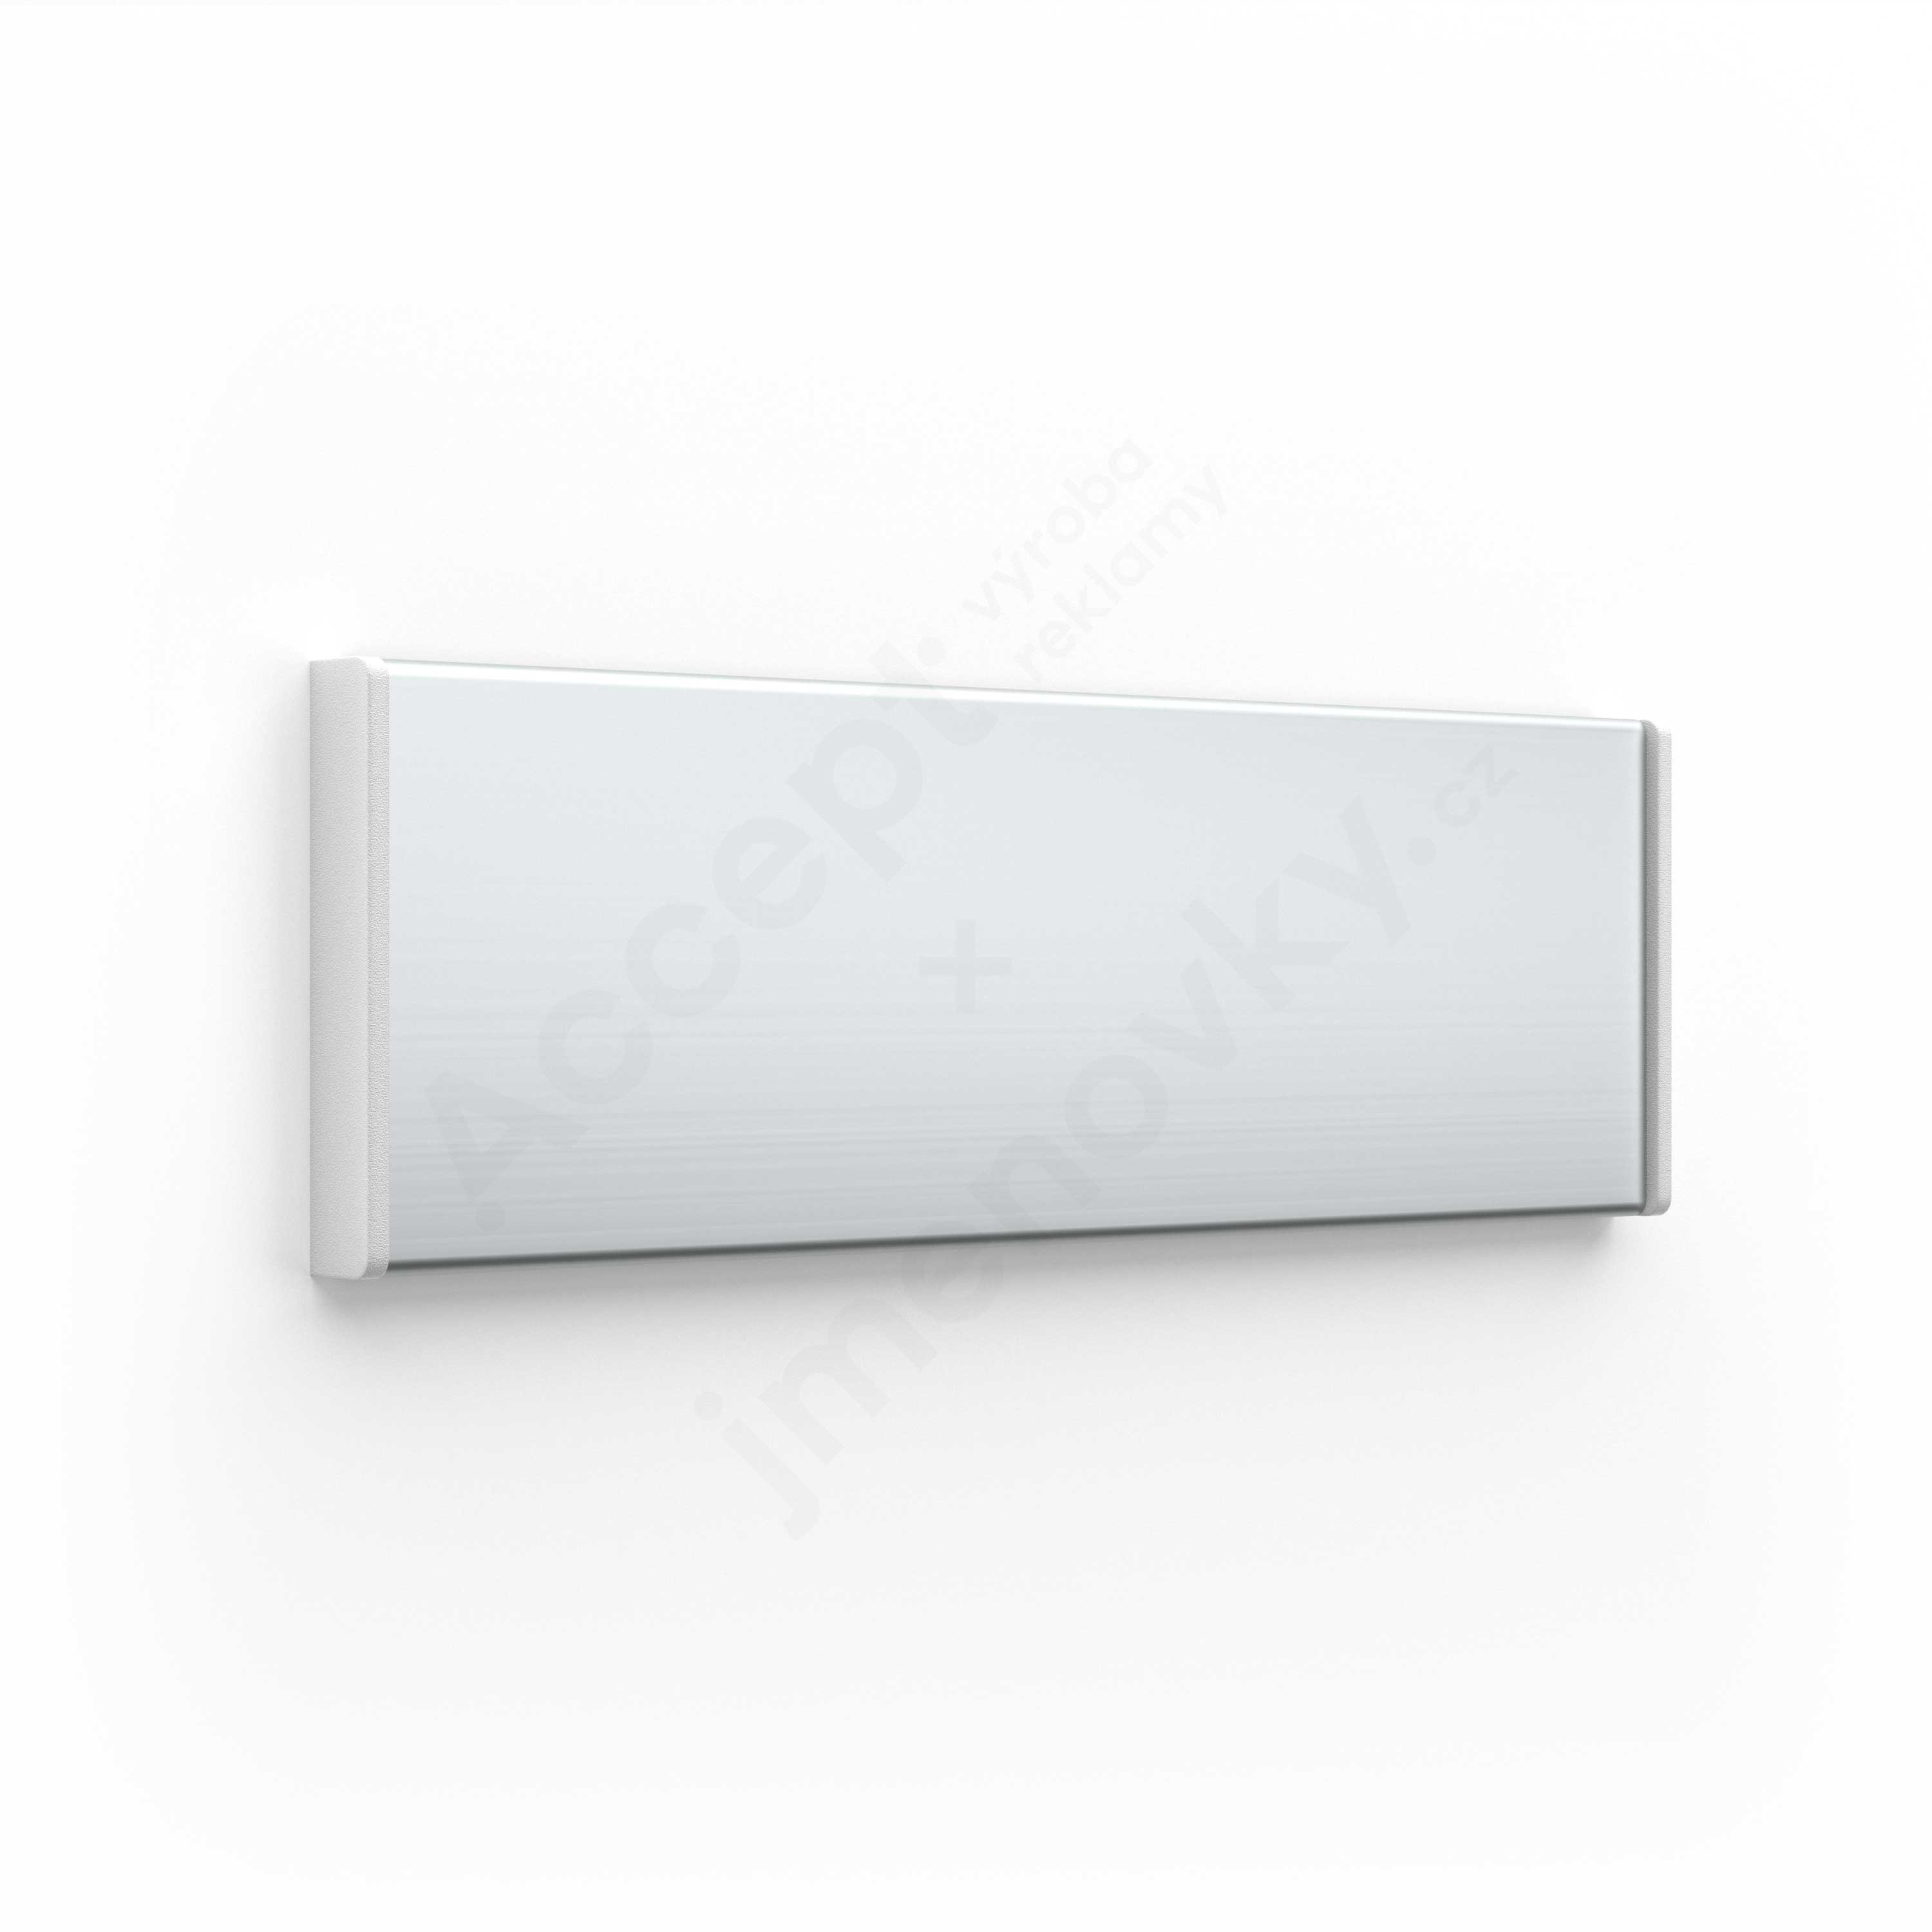 Dveřní tabulka ACS stříbrná se šedými bočnicemi (nezásuvný systém, 187 × 62 mm)